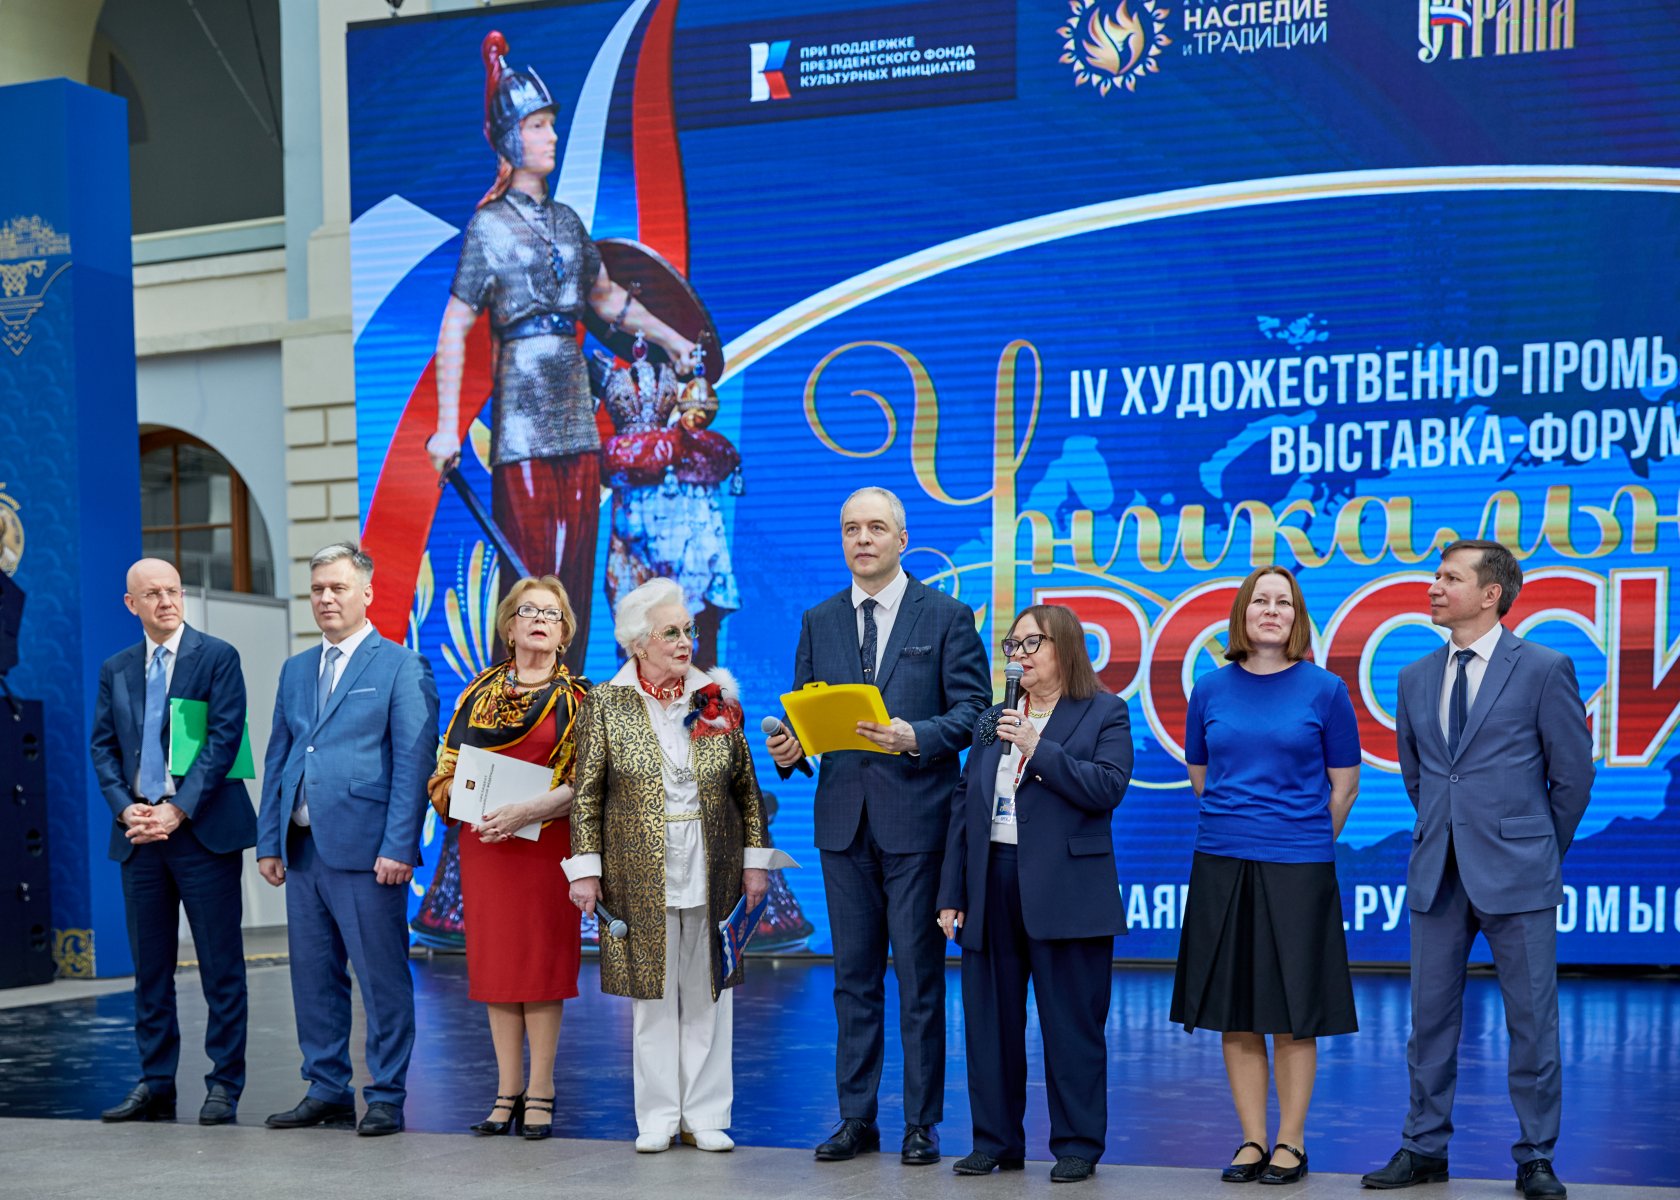 IV выставка-форум «Уникальная Россия» начала работу в Гостином дворе